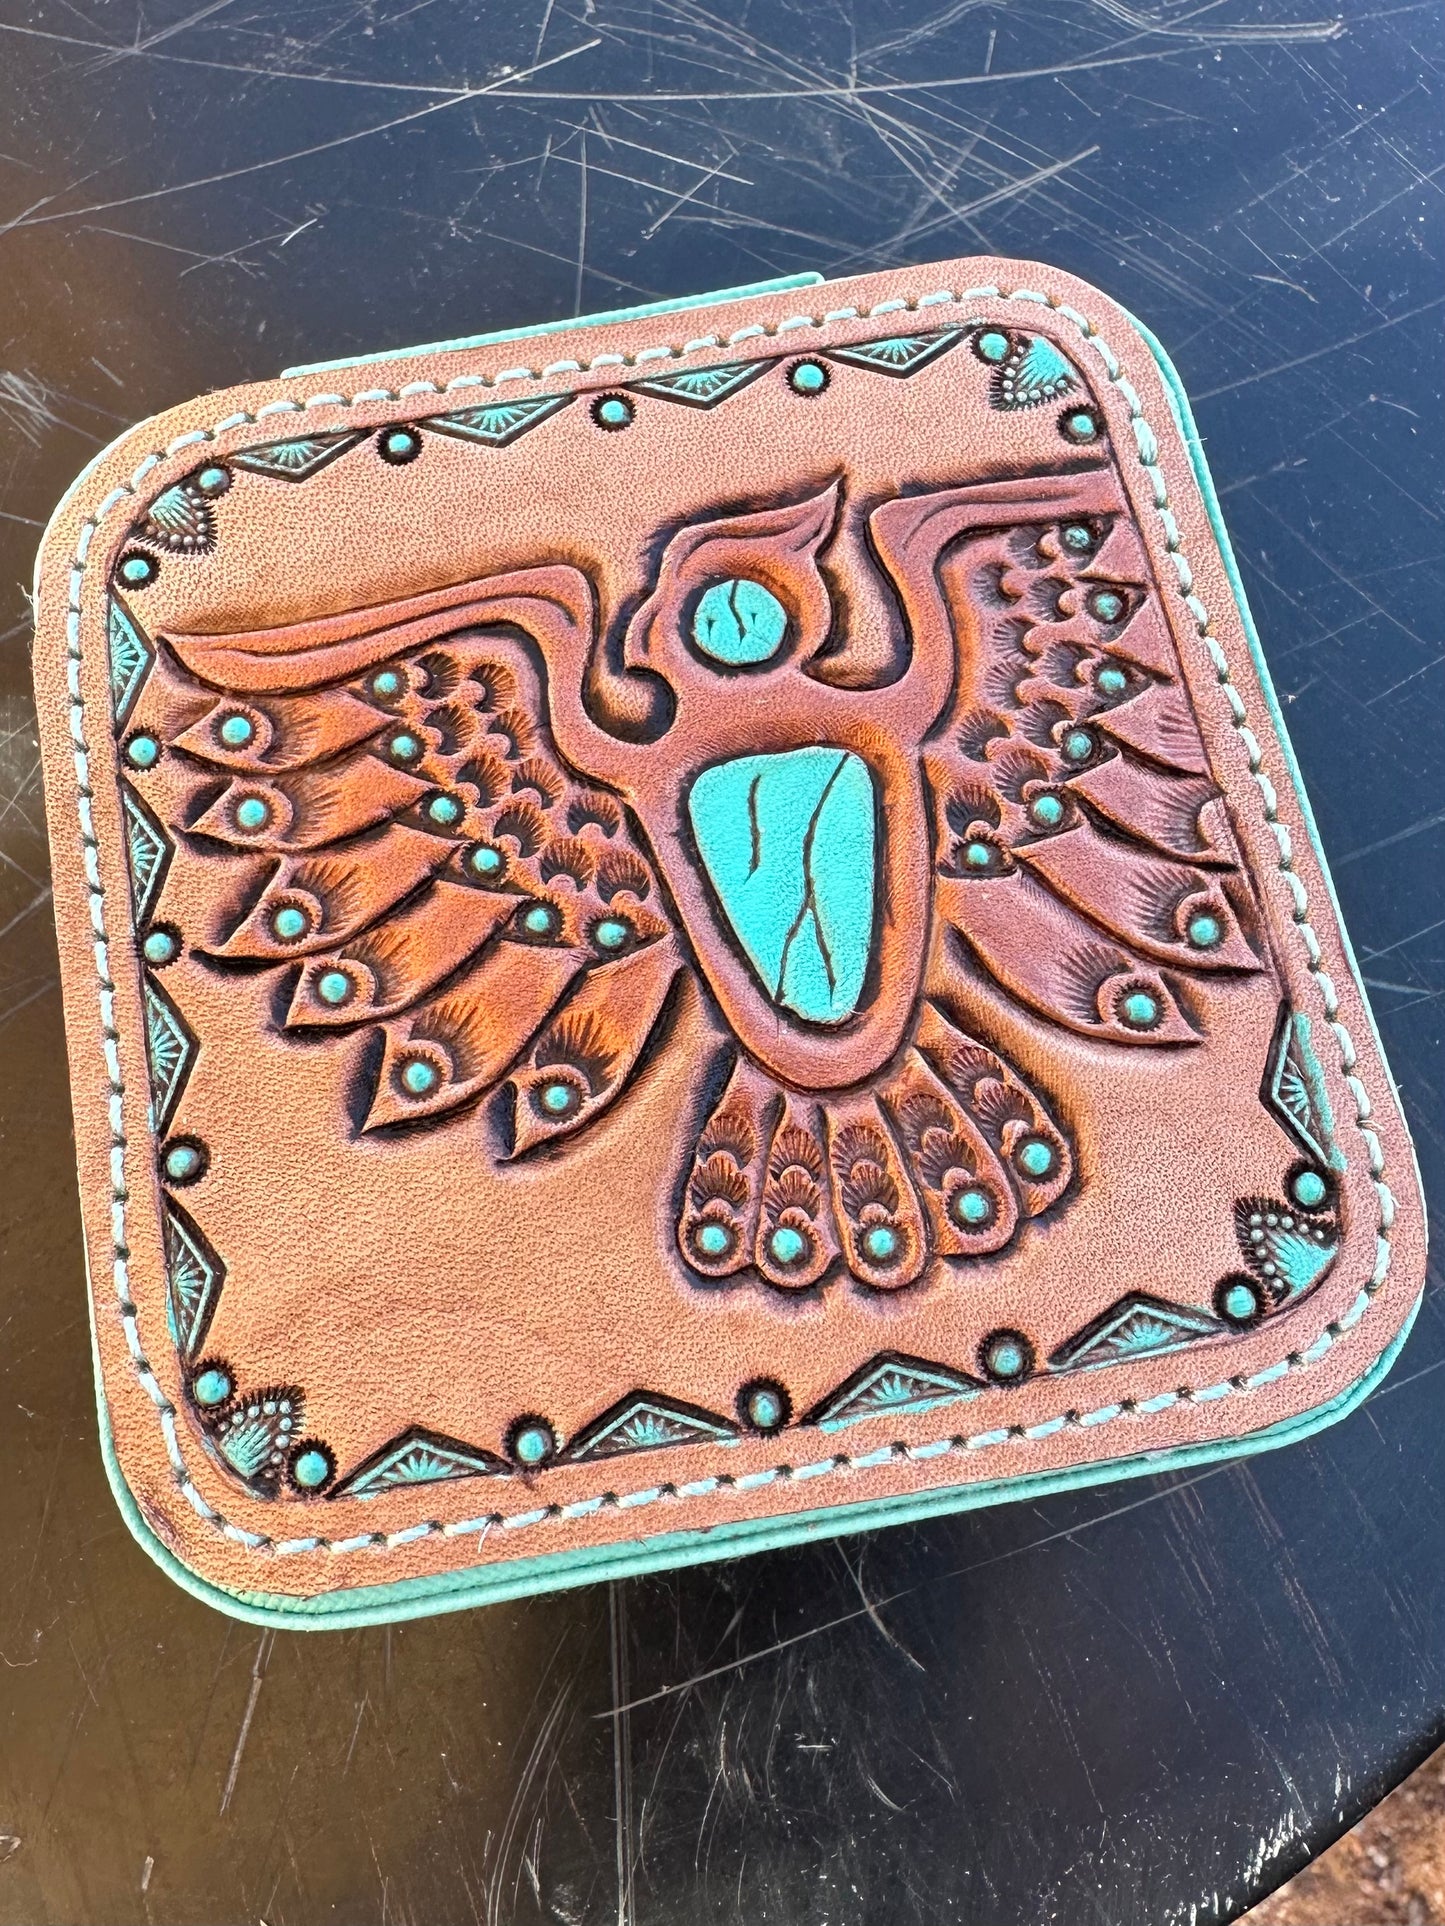 Southwestern tooled leather thunderbird travel jewelry case